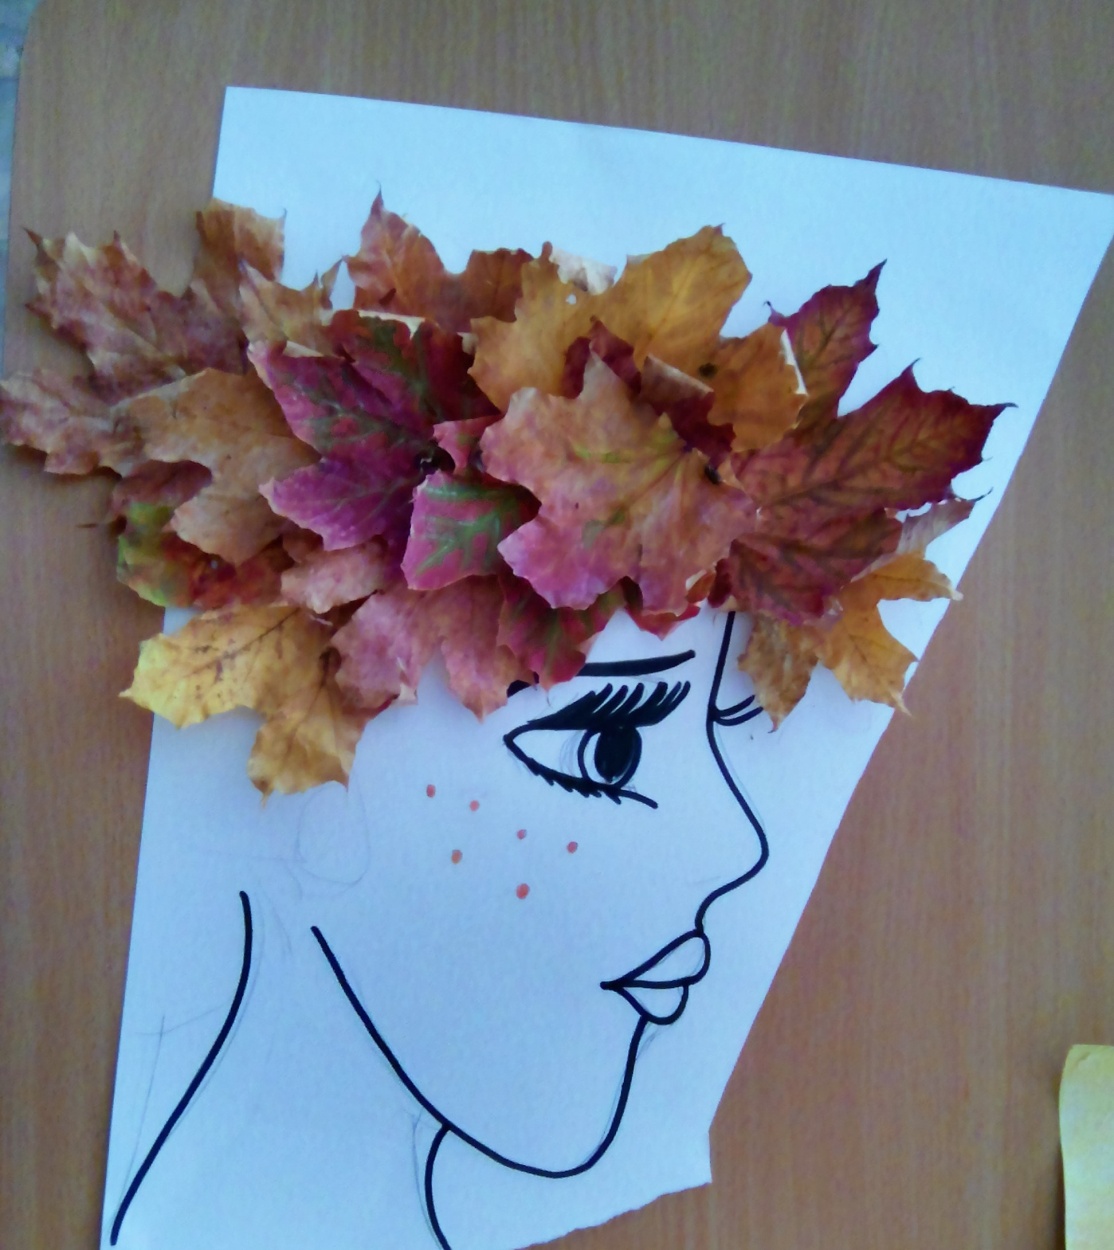 Осенний портрет из листьев